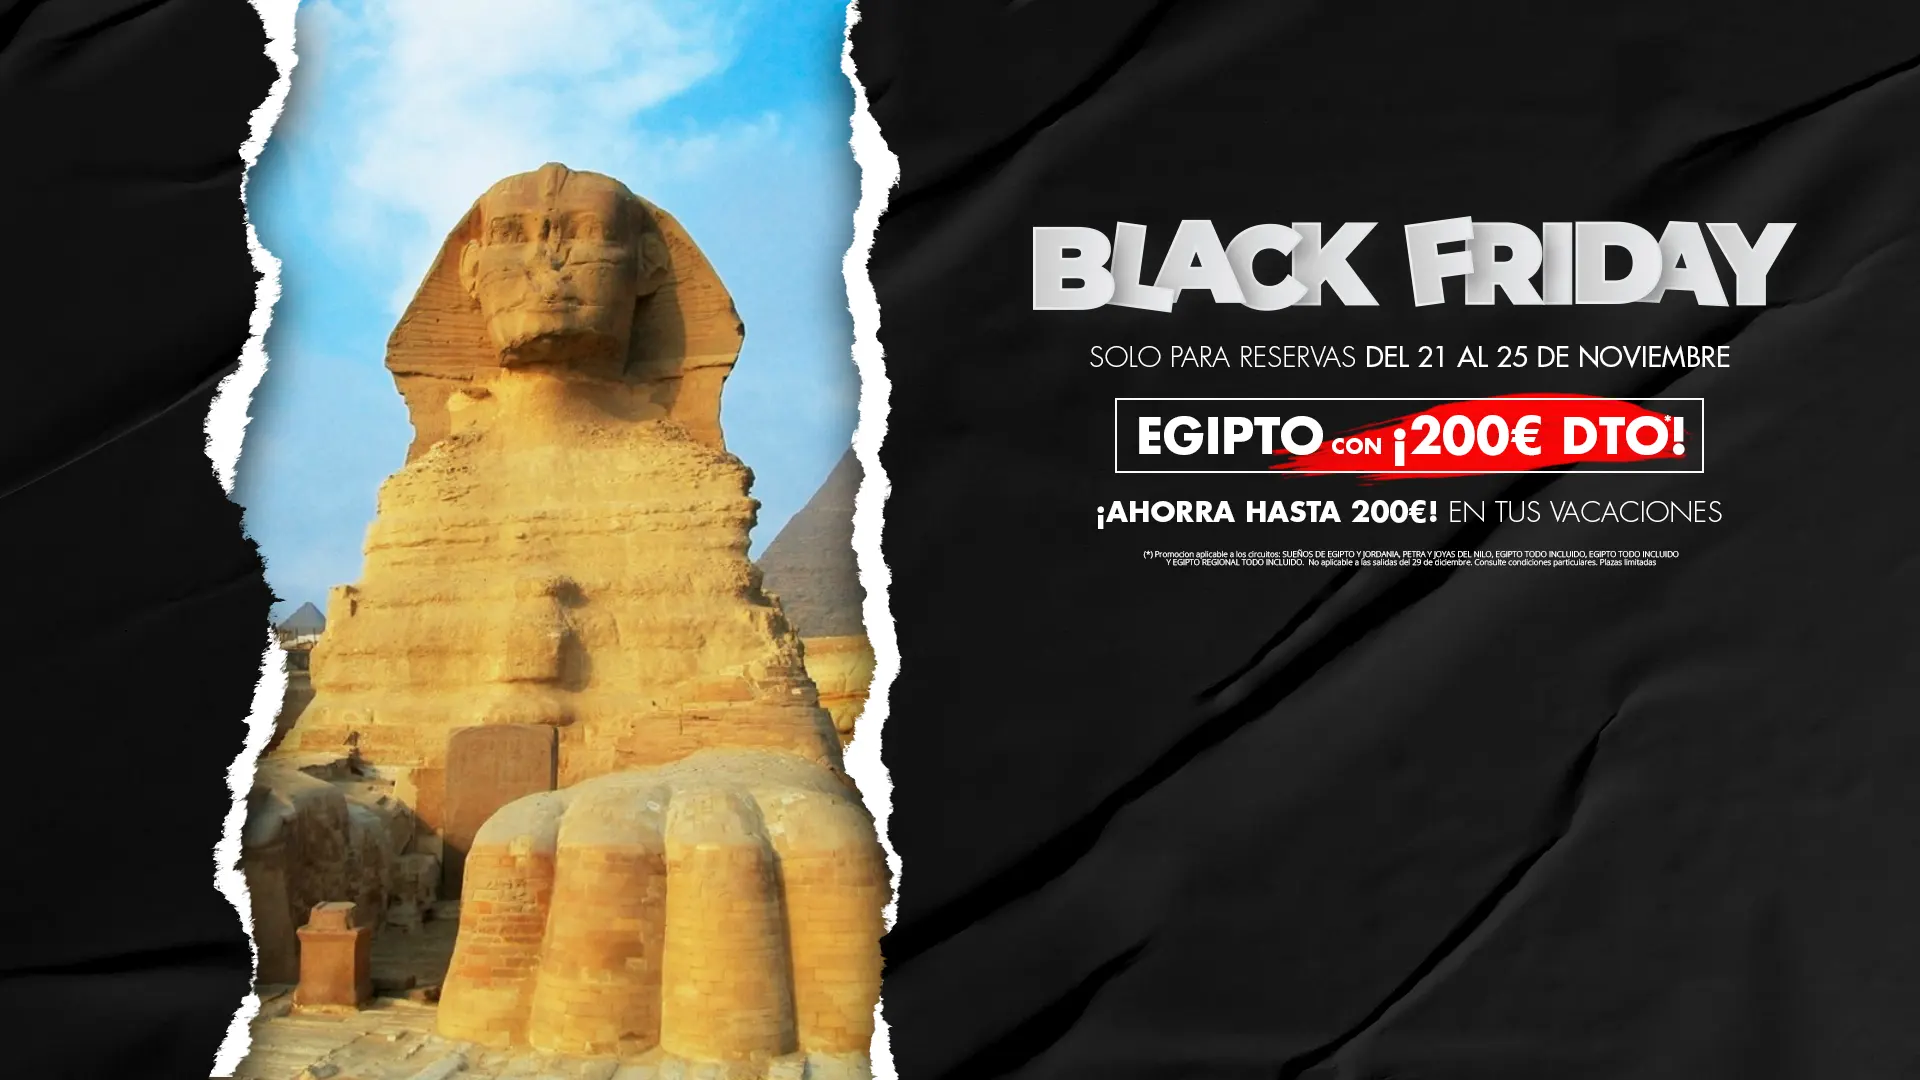 BlackFriday22 Egipto